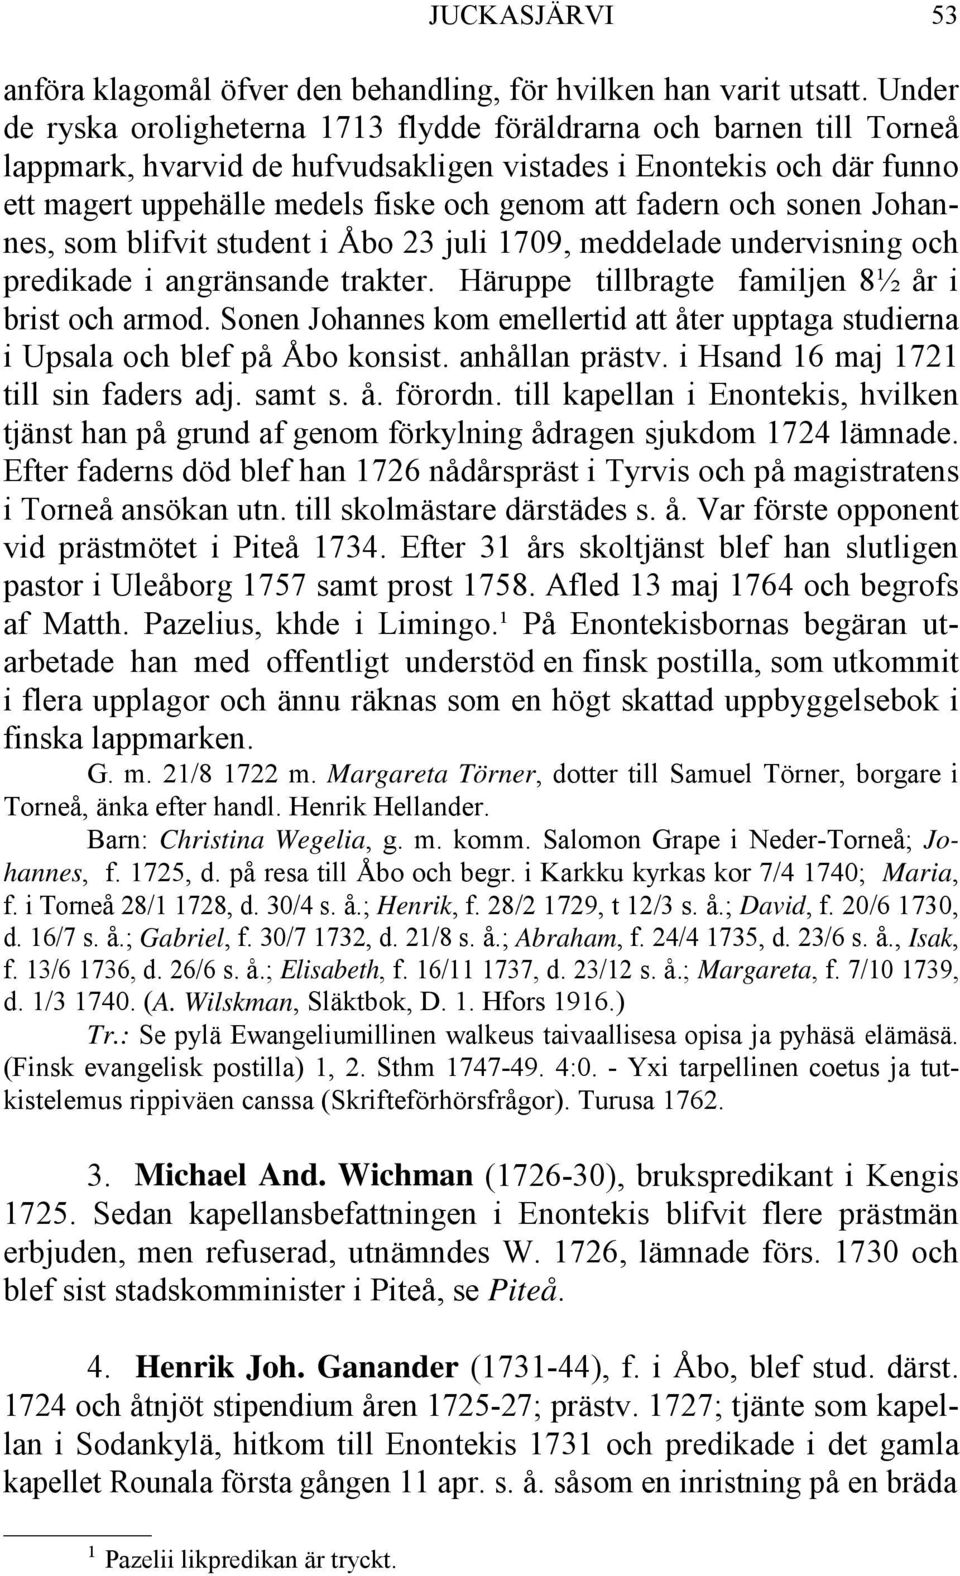 fadern och sonen Johannes, som blifvit student i Åbo 23 juli 1709, meddelade undervisning och predikade i angränsande trakter. Häruppe tillbragte familjen 8½ år i brist och armod.